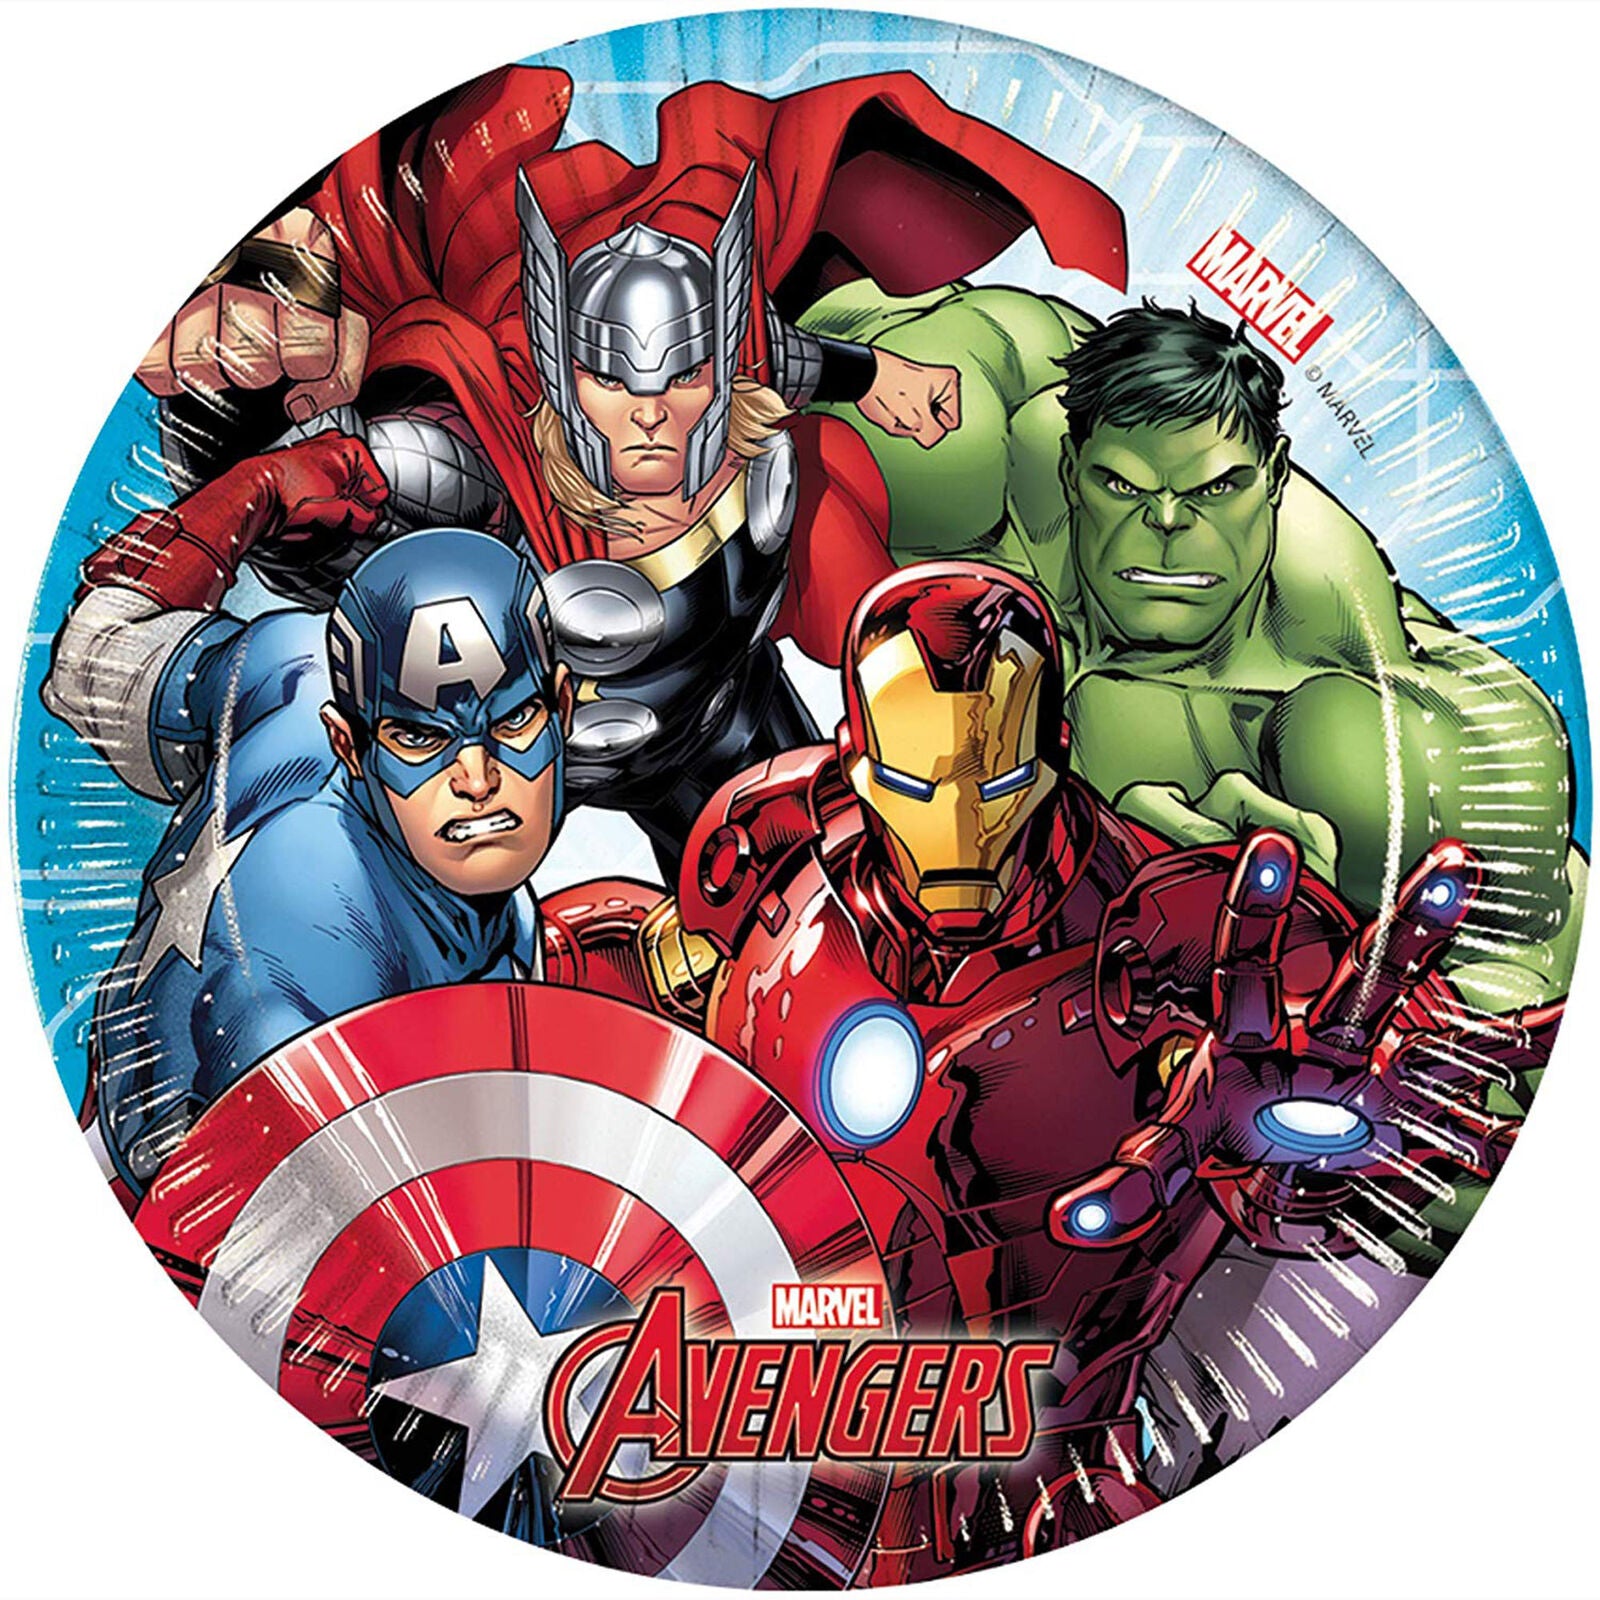 Kit party Marvel Avengers 24 persone bicchieri piatti tovaglia tovagli